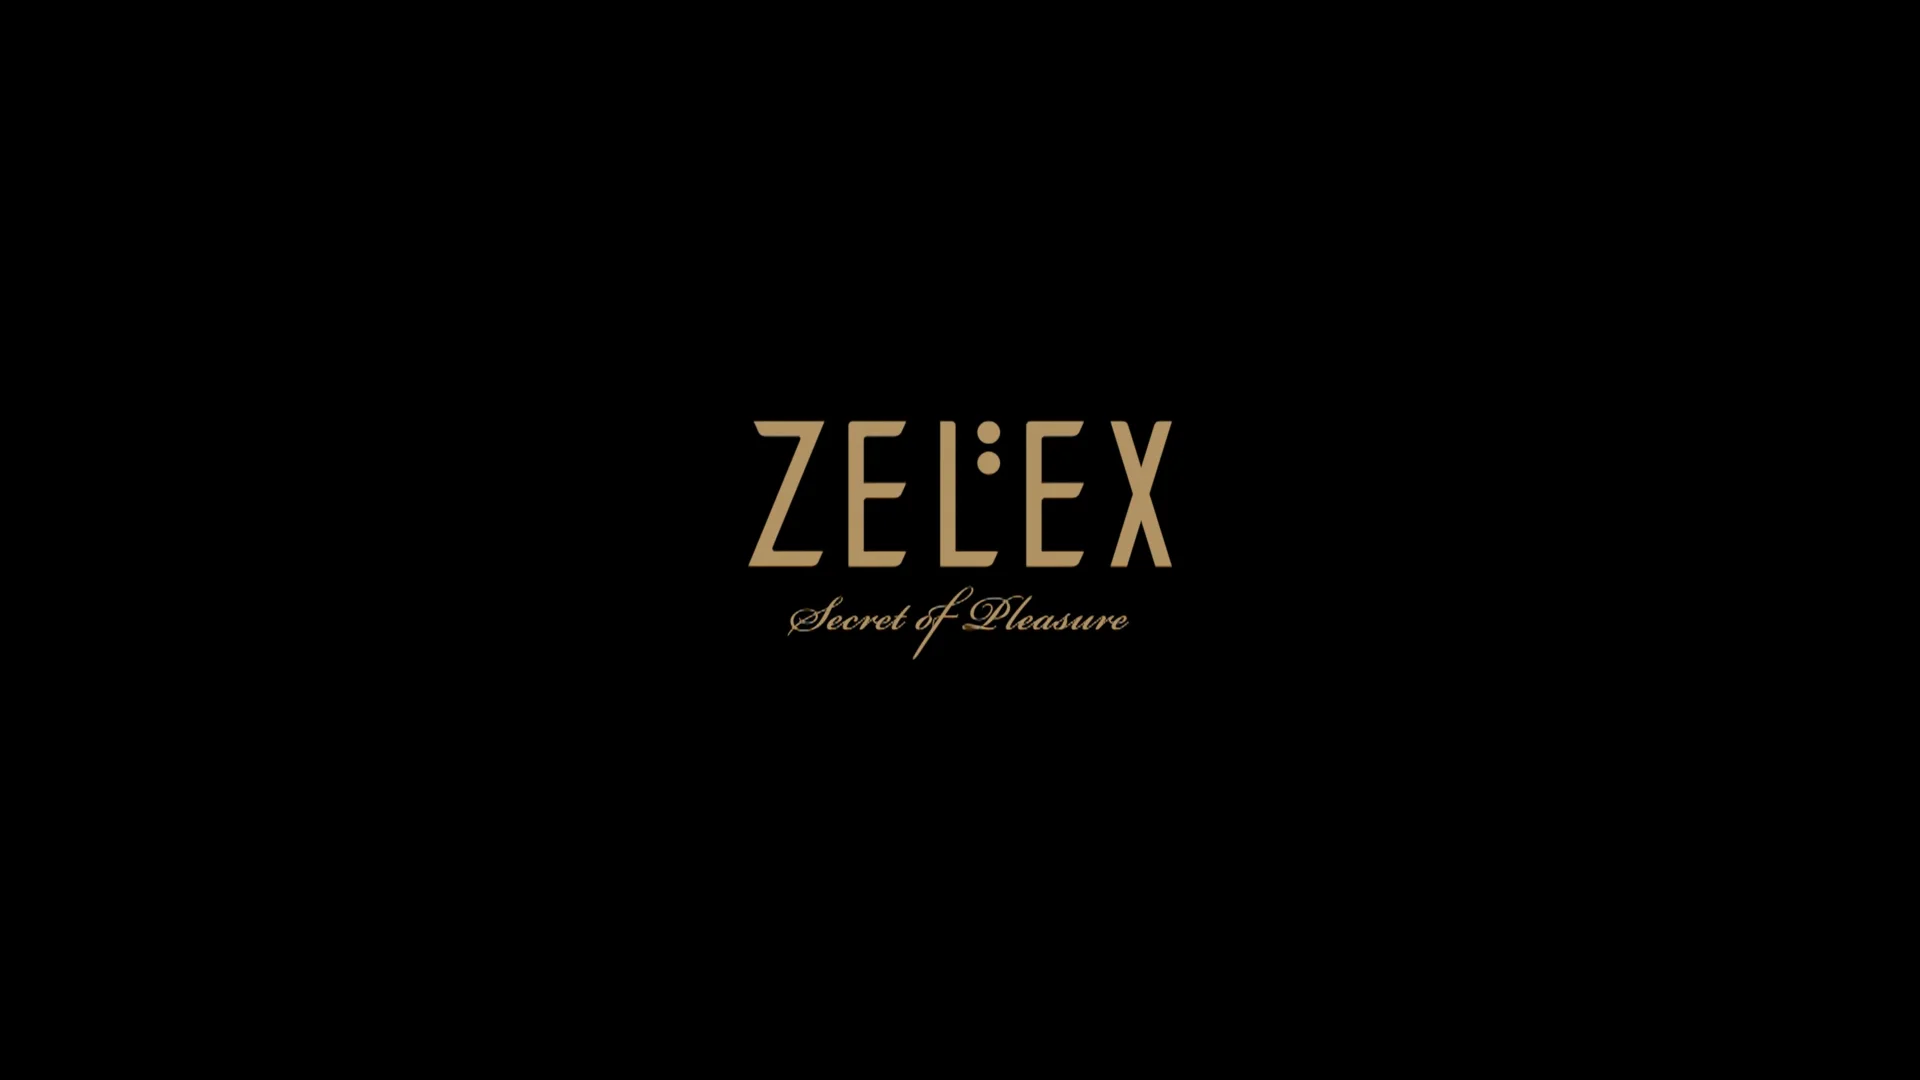 ZELEX Sex Dolls: Body Skin Texture Details on Vimeo